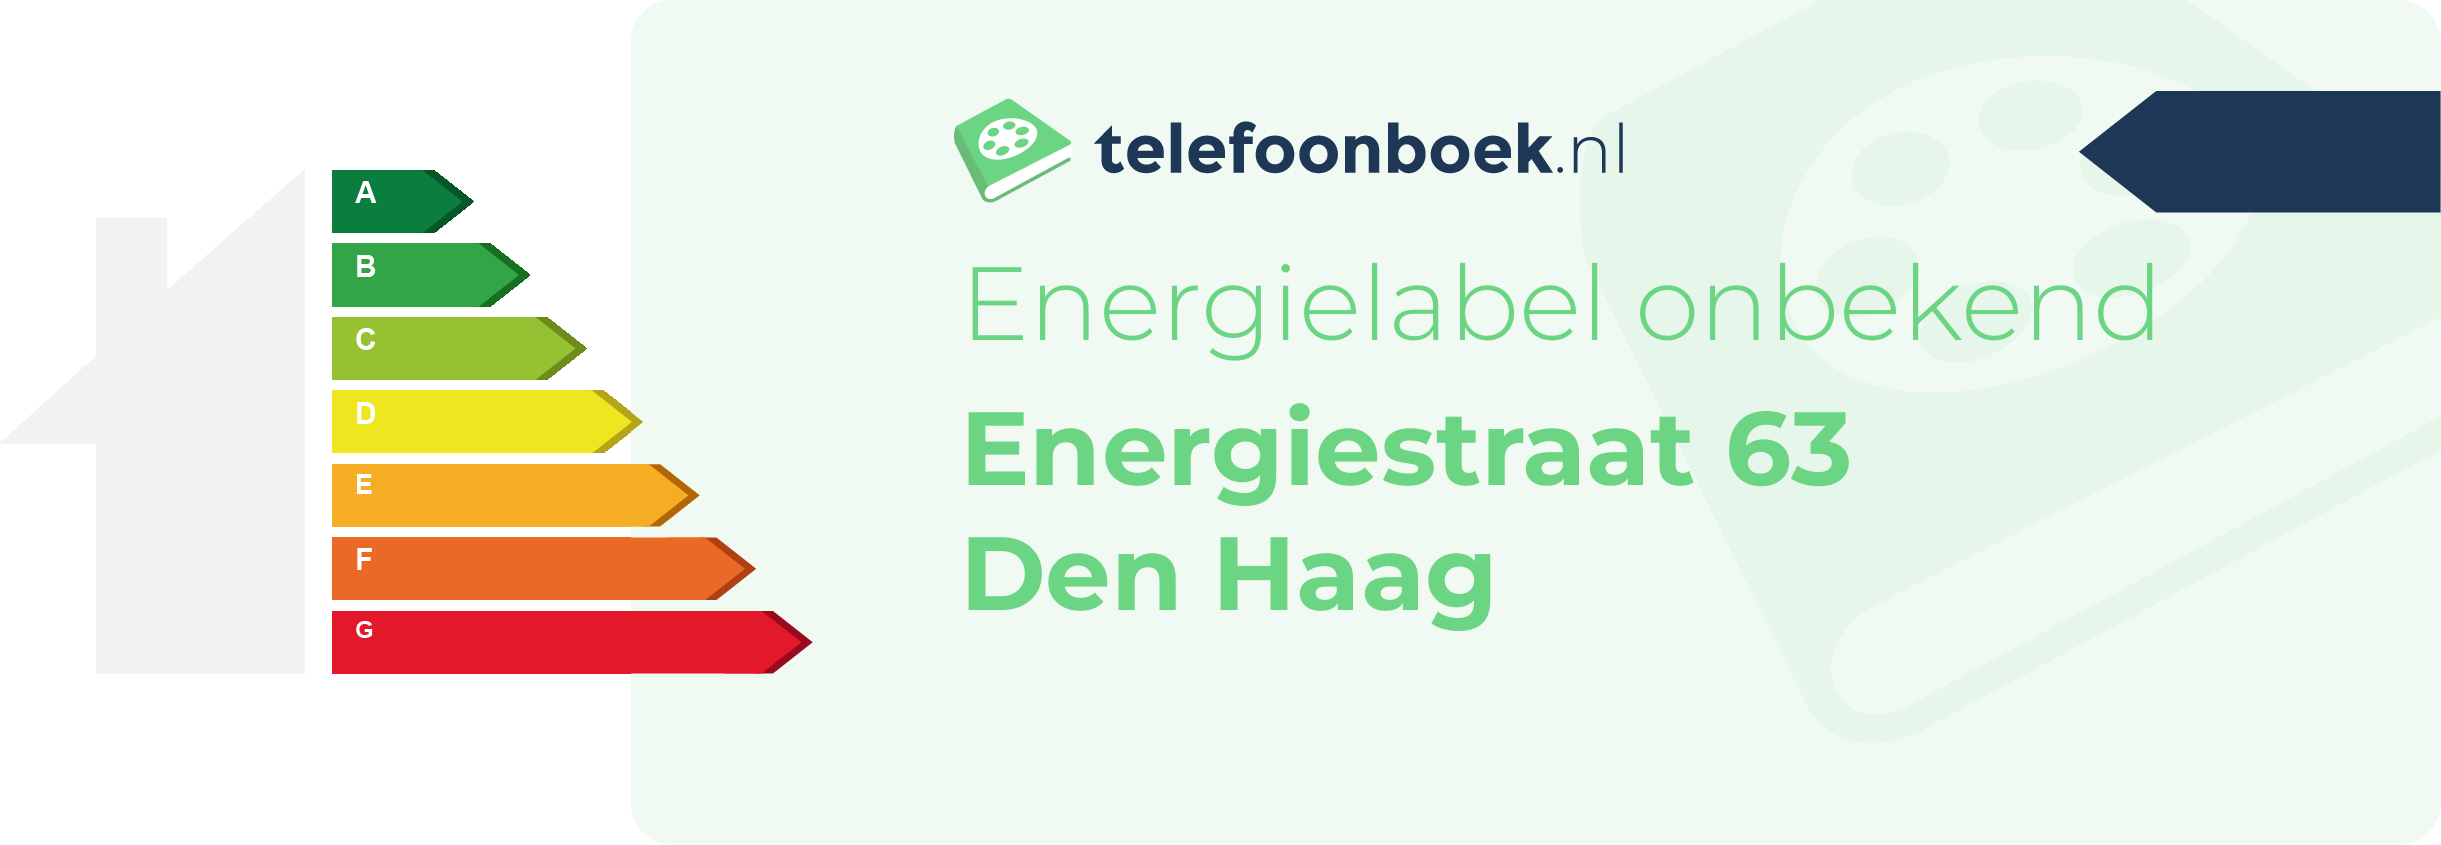 Energielabel Energiestraat 63 Den Haag